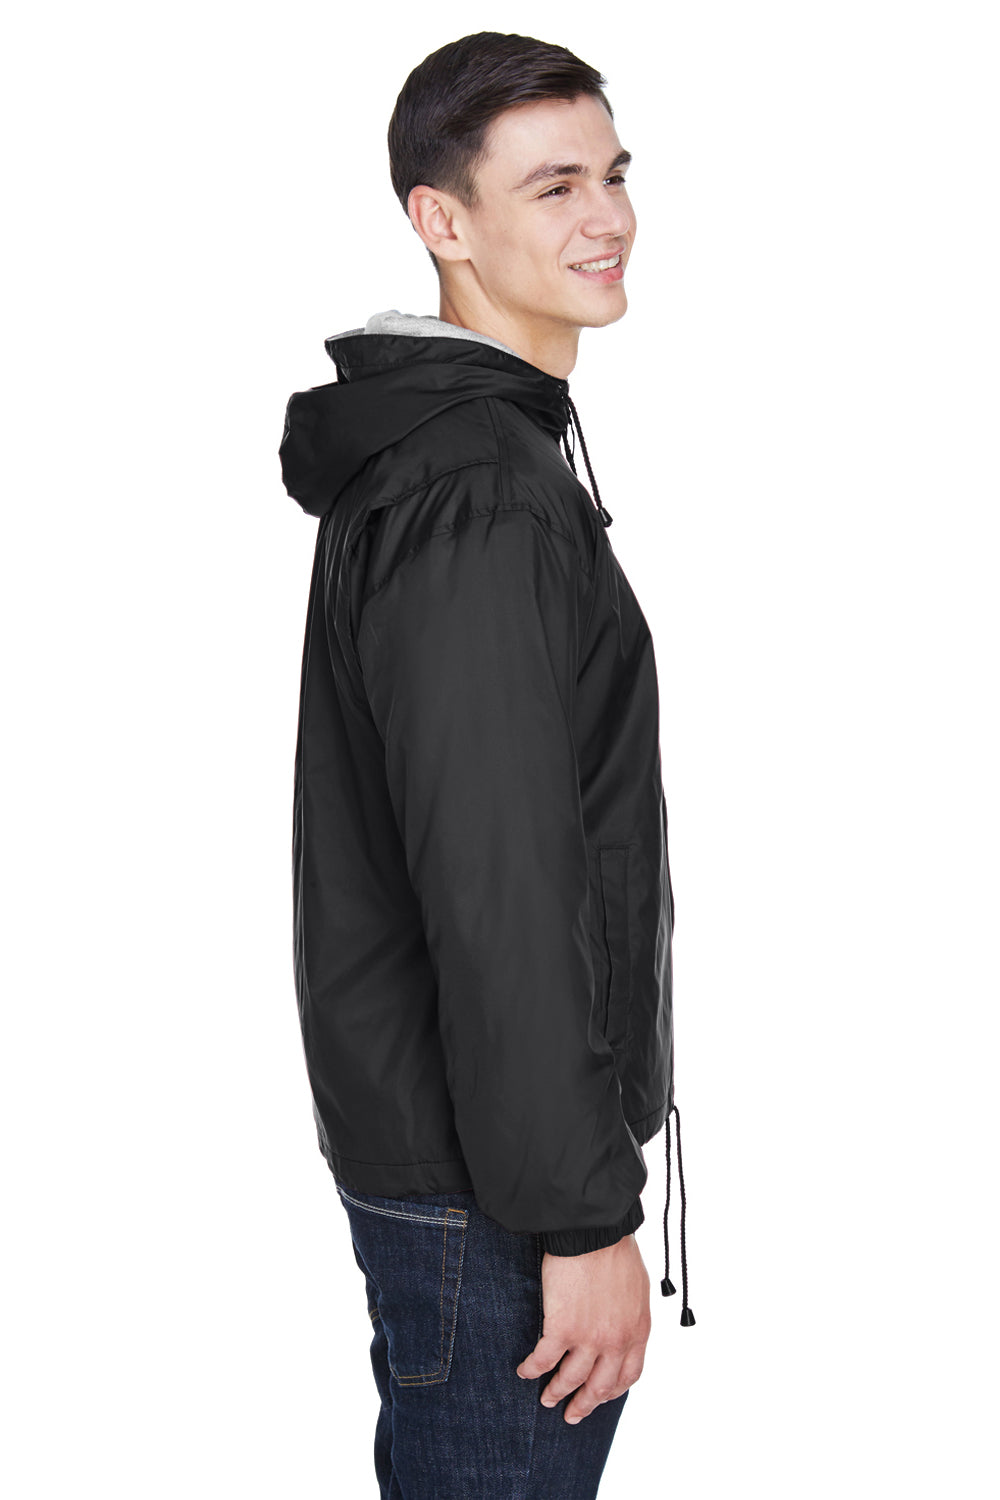 UltraClub 8915 Mens Wind & Water Resistant Full Zip Hooded Jacket Black Side